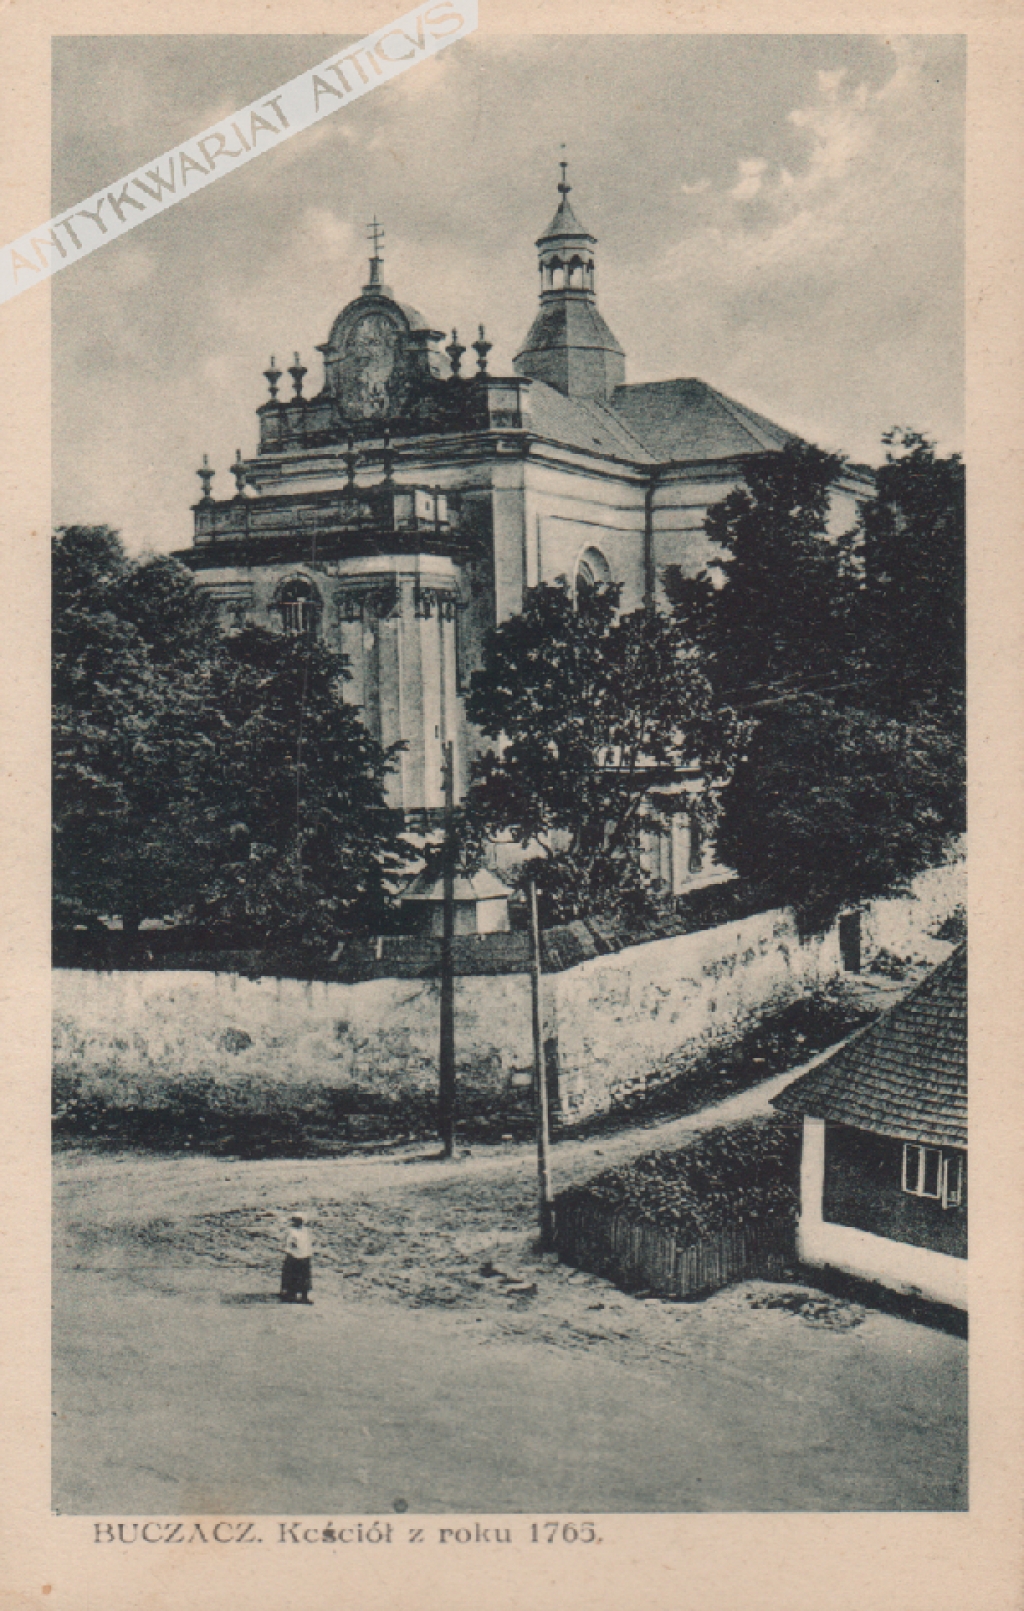 [pocztówka, lata 1920-te] Buczacz. Kościół z roku 1765